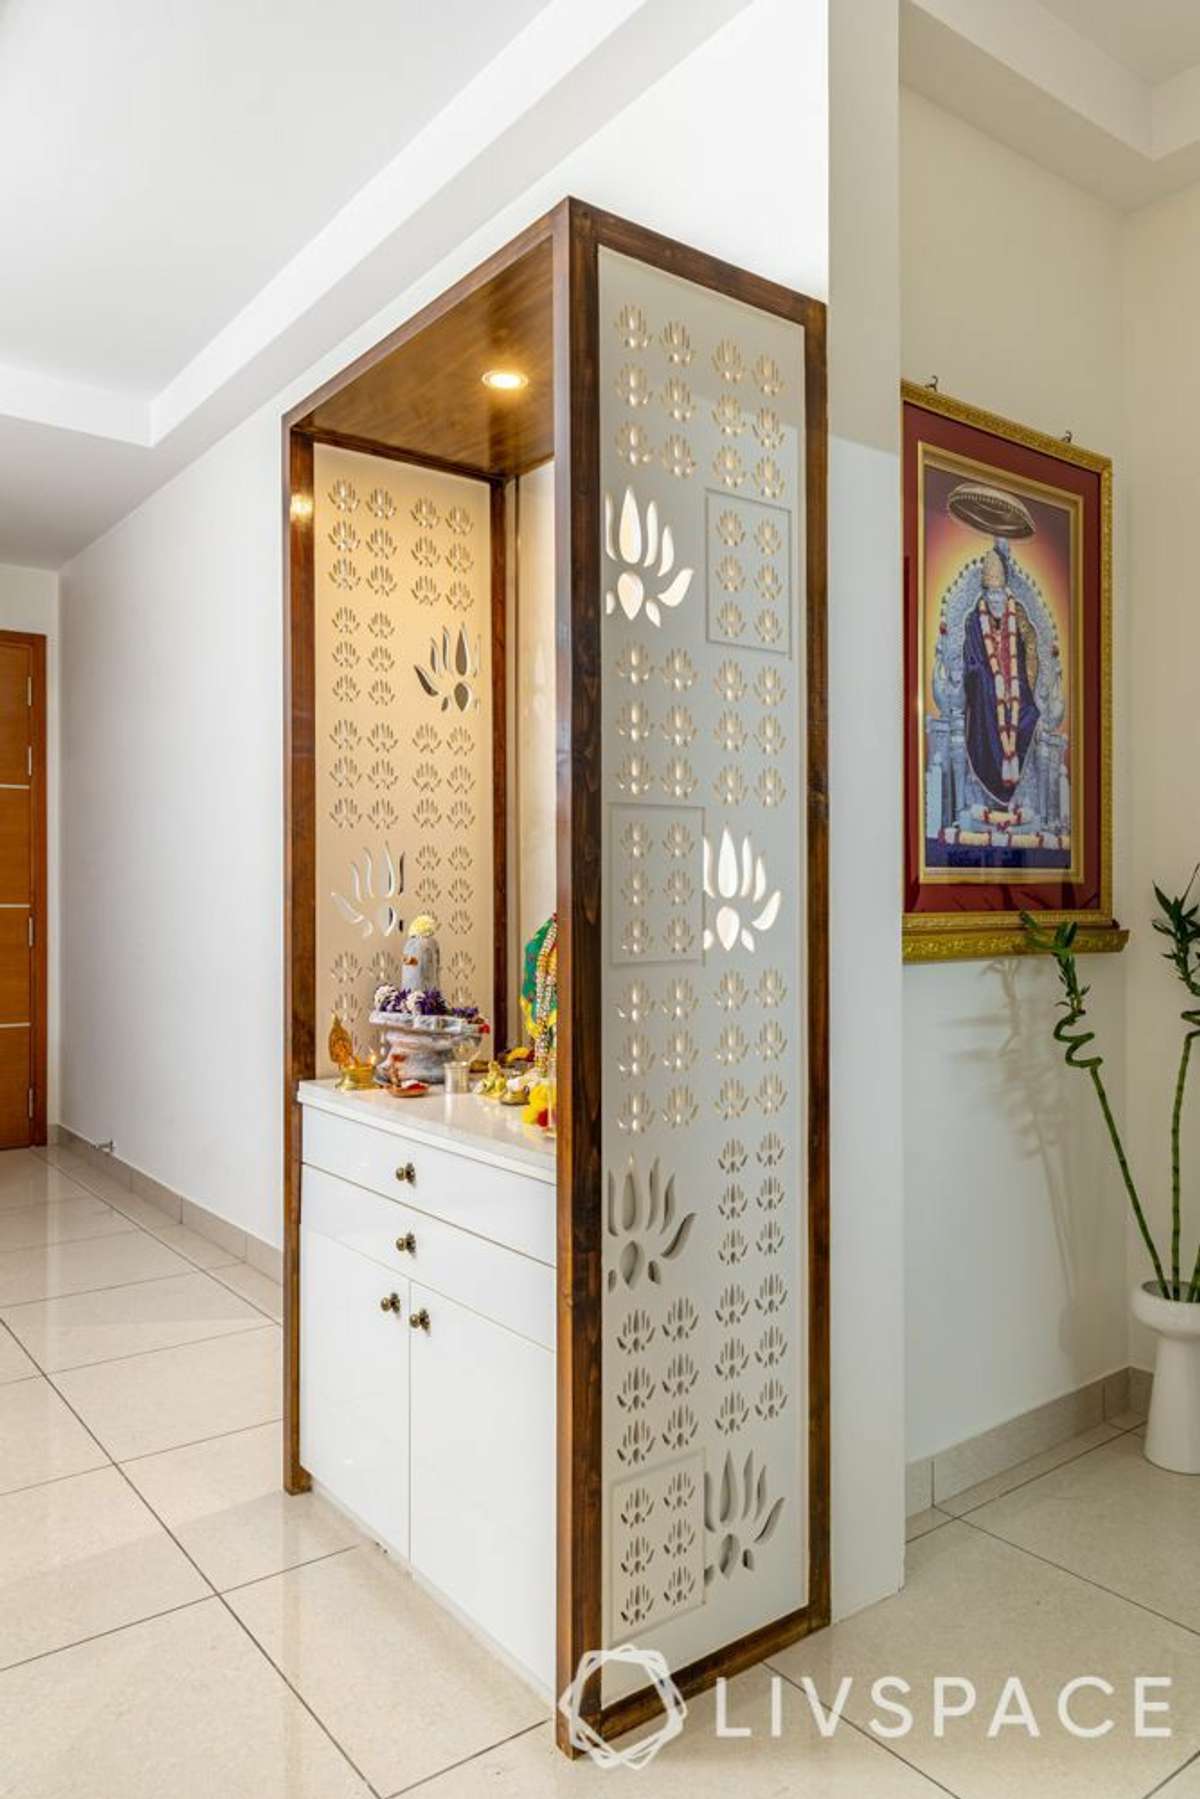 Designs by Carpenter jai bhawani pvt Ltd, Jaipur | Kolo